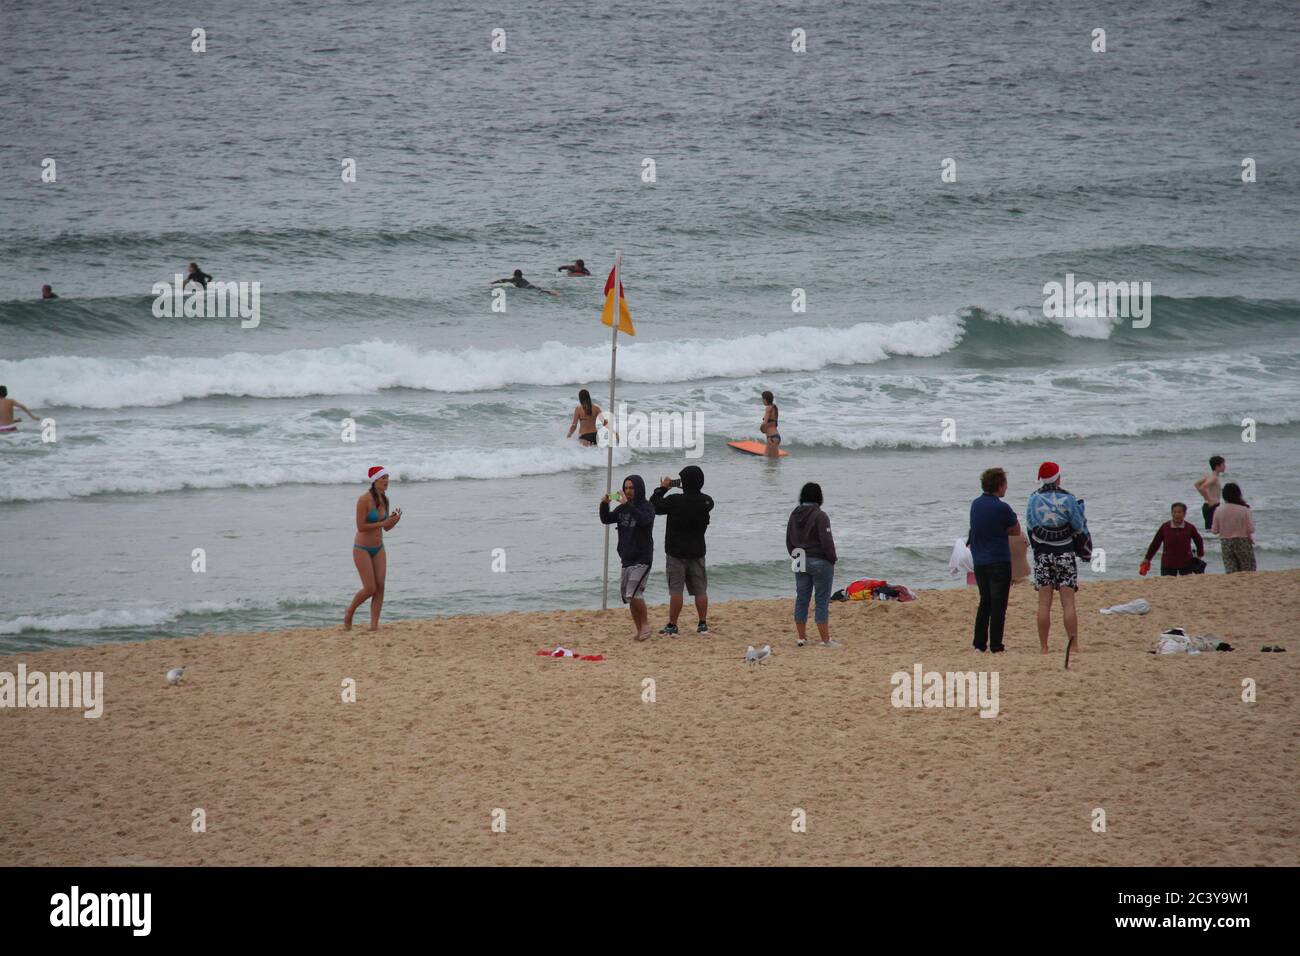 Am ersten Weihnachtsfeiertag wäre der Bondi Beach in Sydney normalerweise voller Menschen gewesen, aber Regen hielt viele Menschen fern. Stockfoto